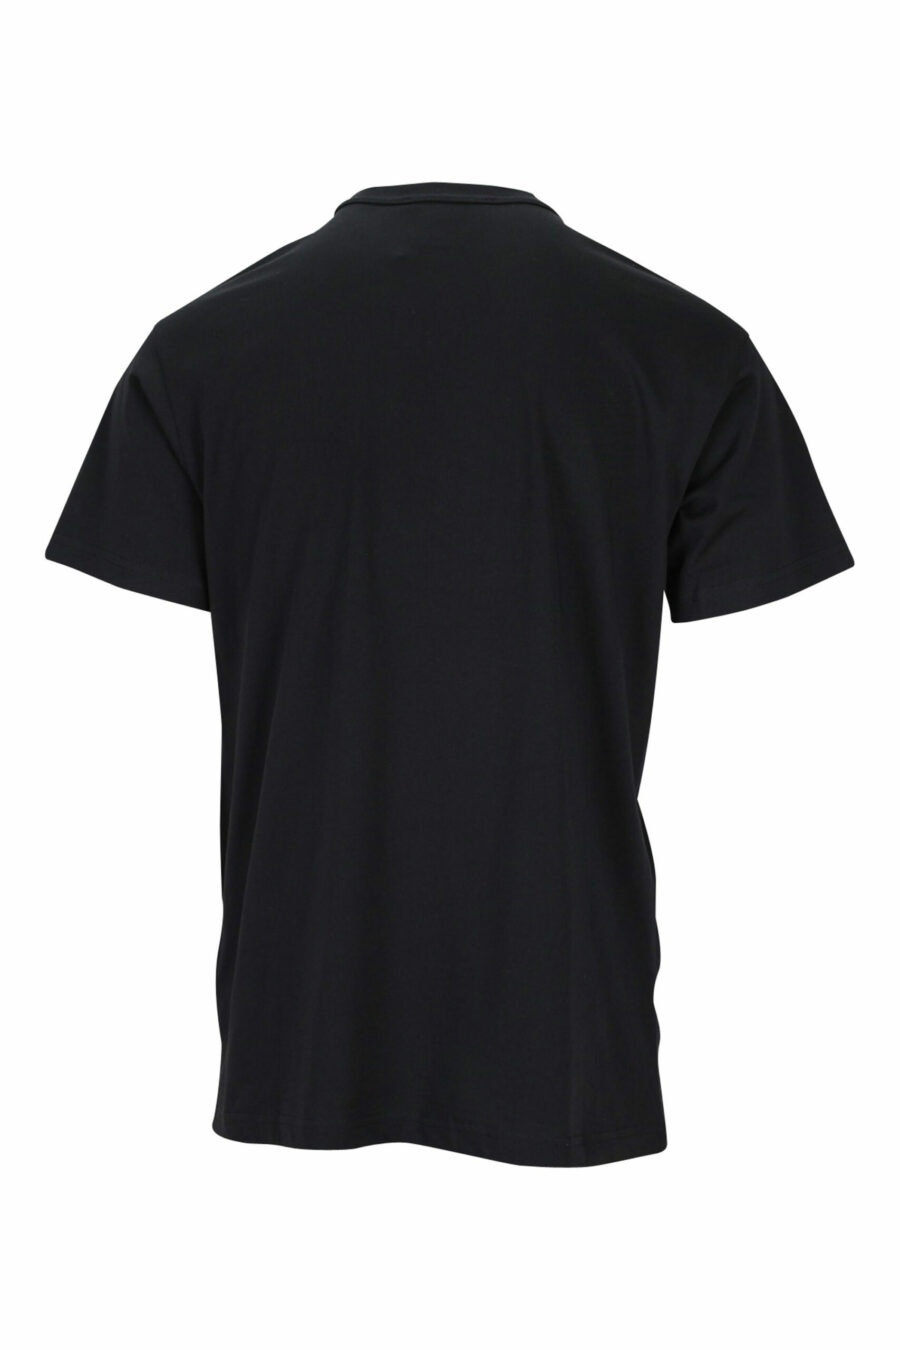 Camiseta negra con maxilogo clásico en contraste - 8052019457698 1 scaled